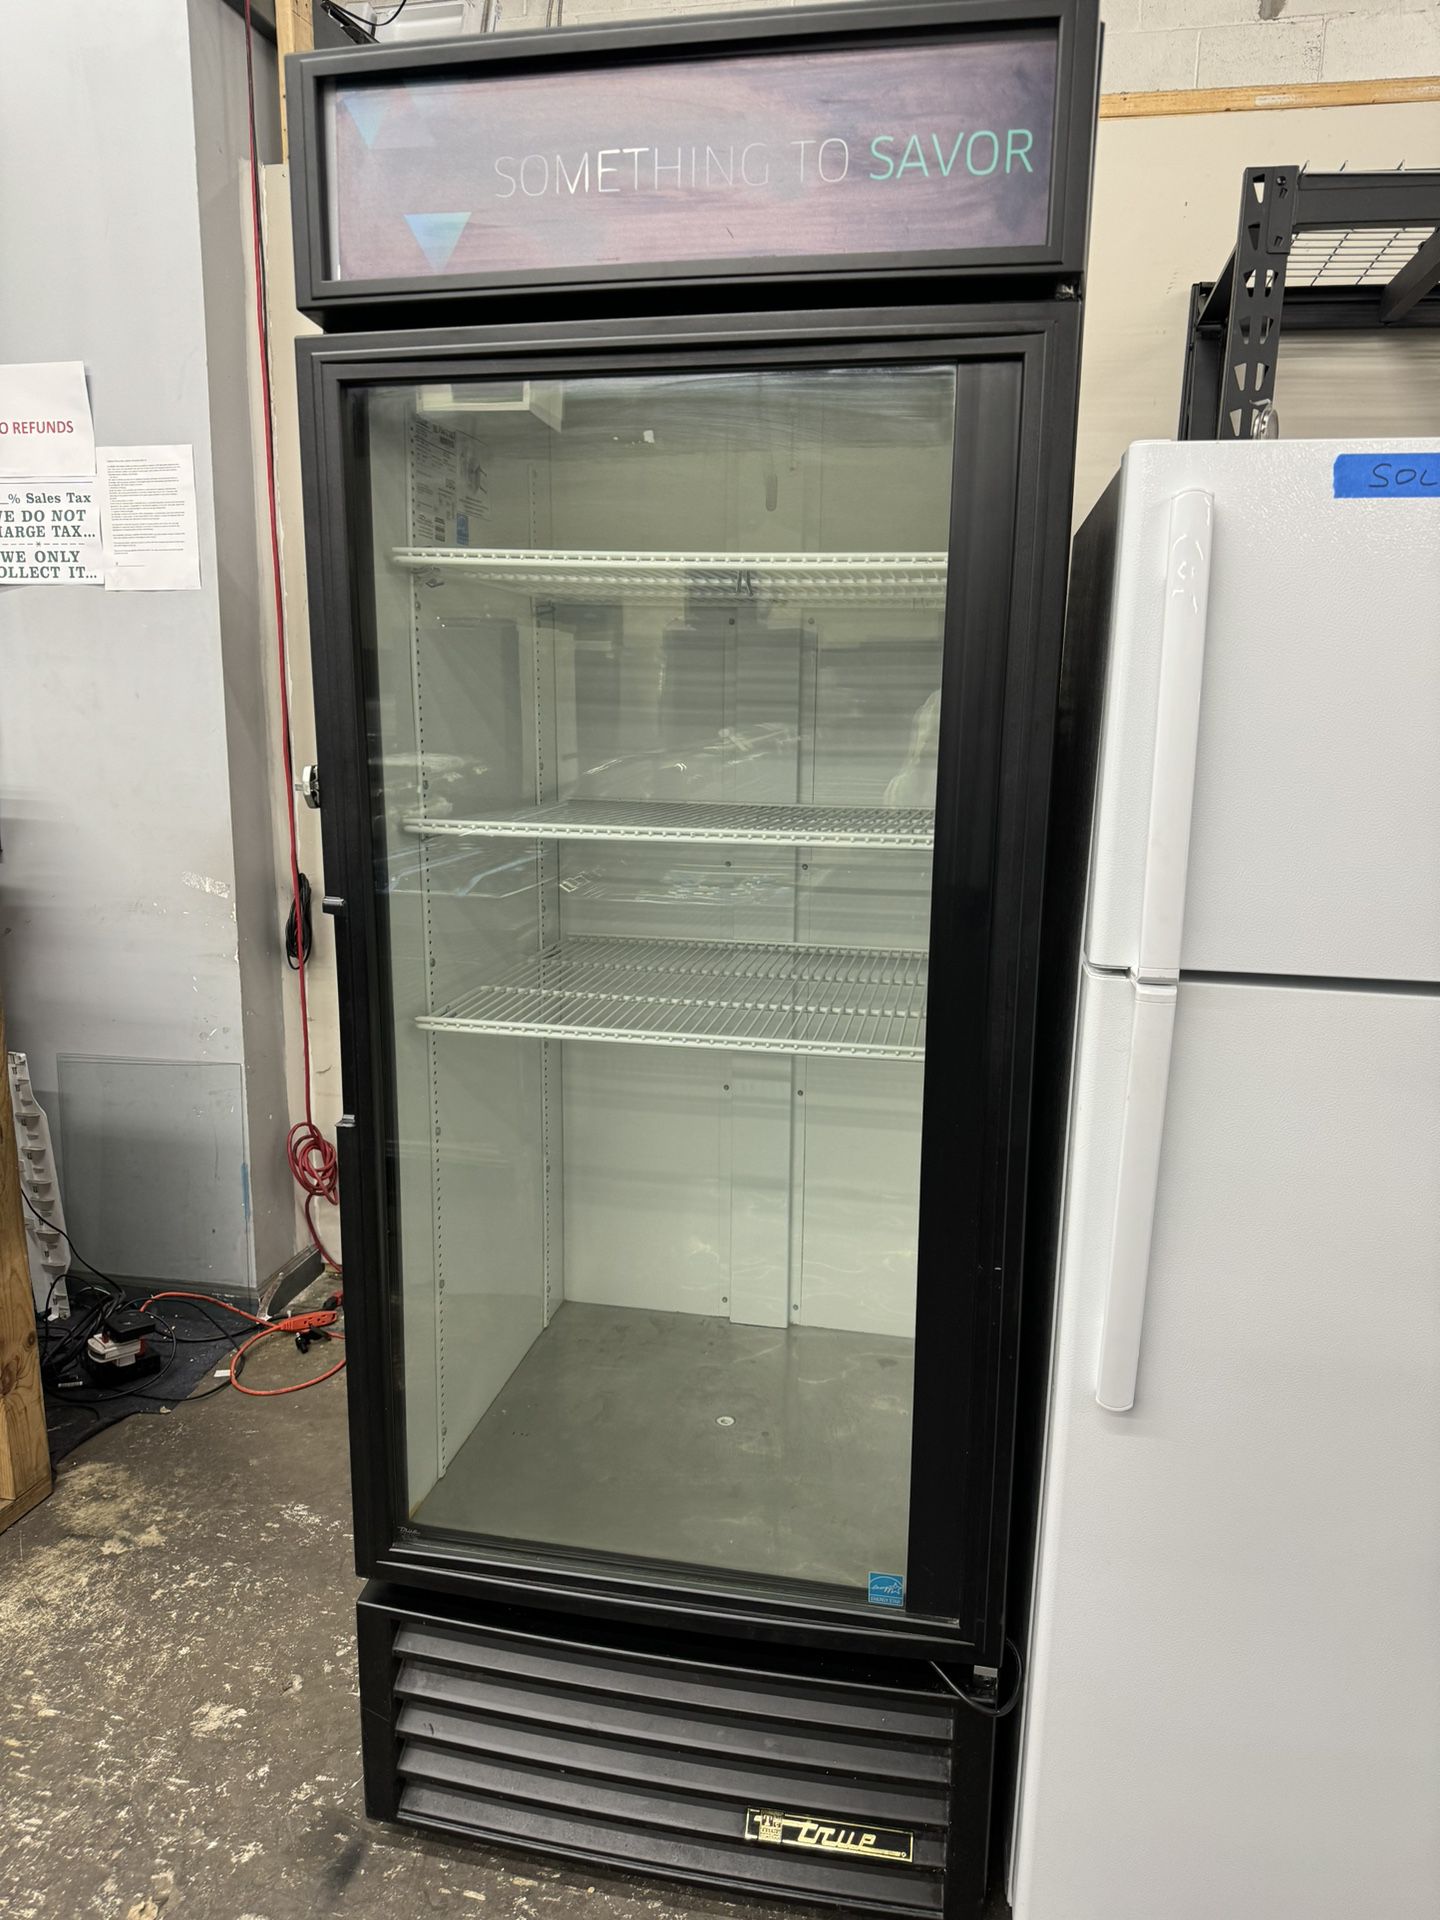 True Commercial Refrigerator 